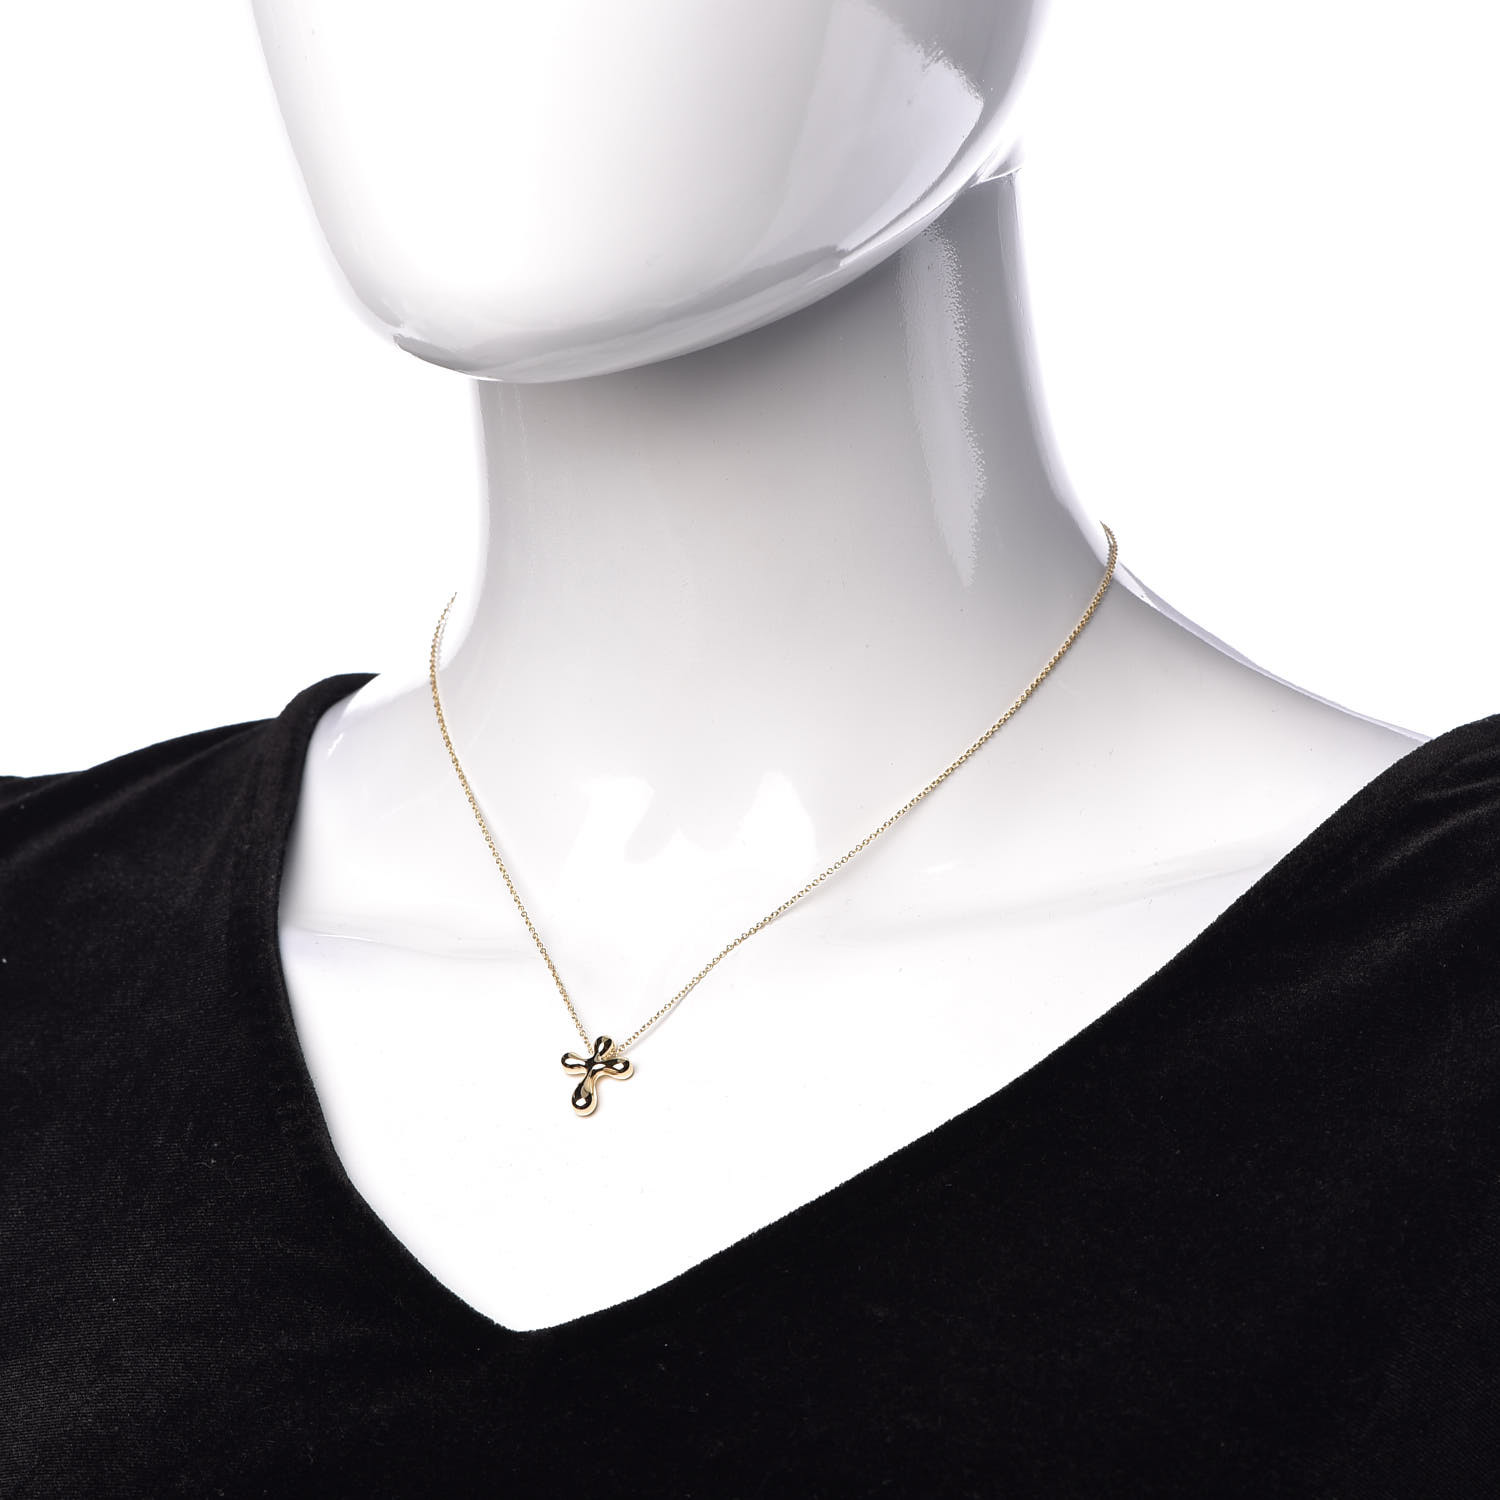 elsa peretti cross necklace